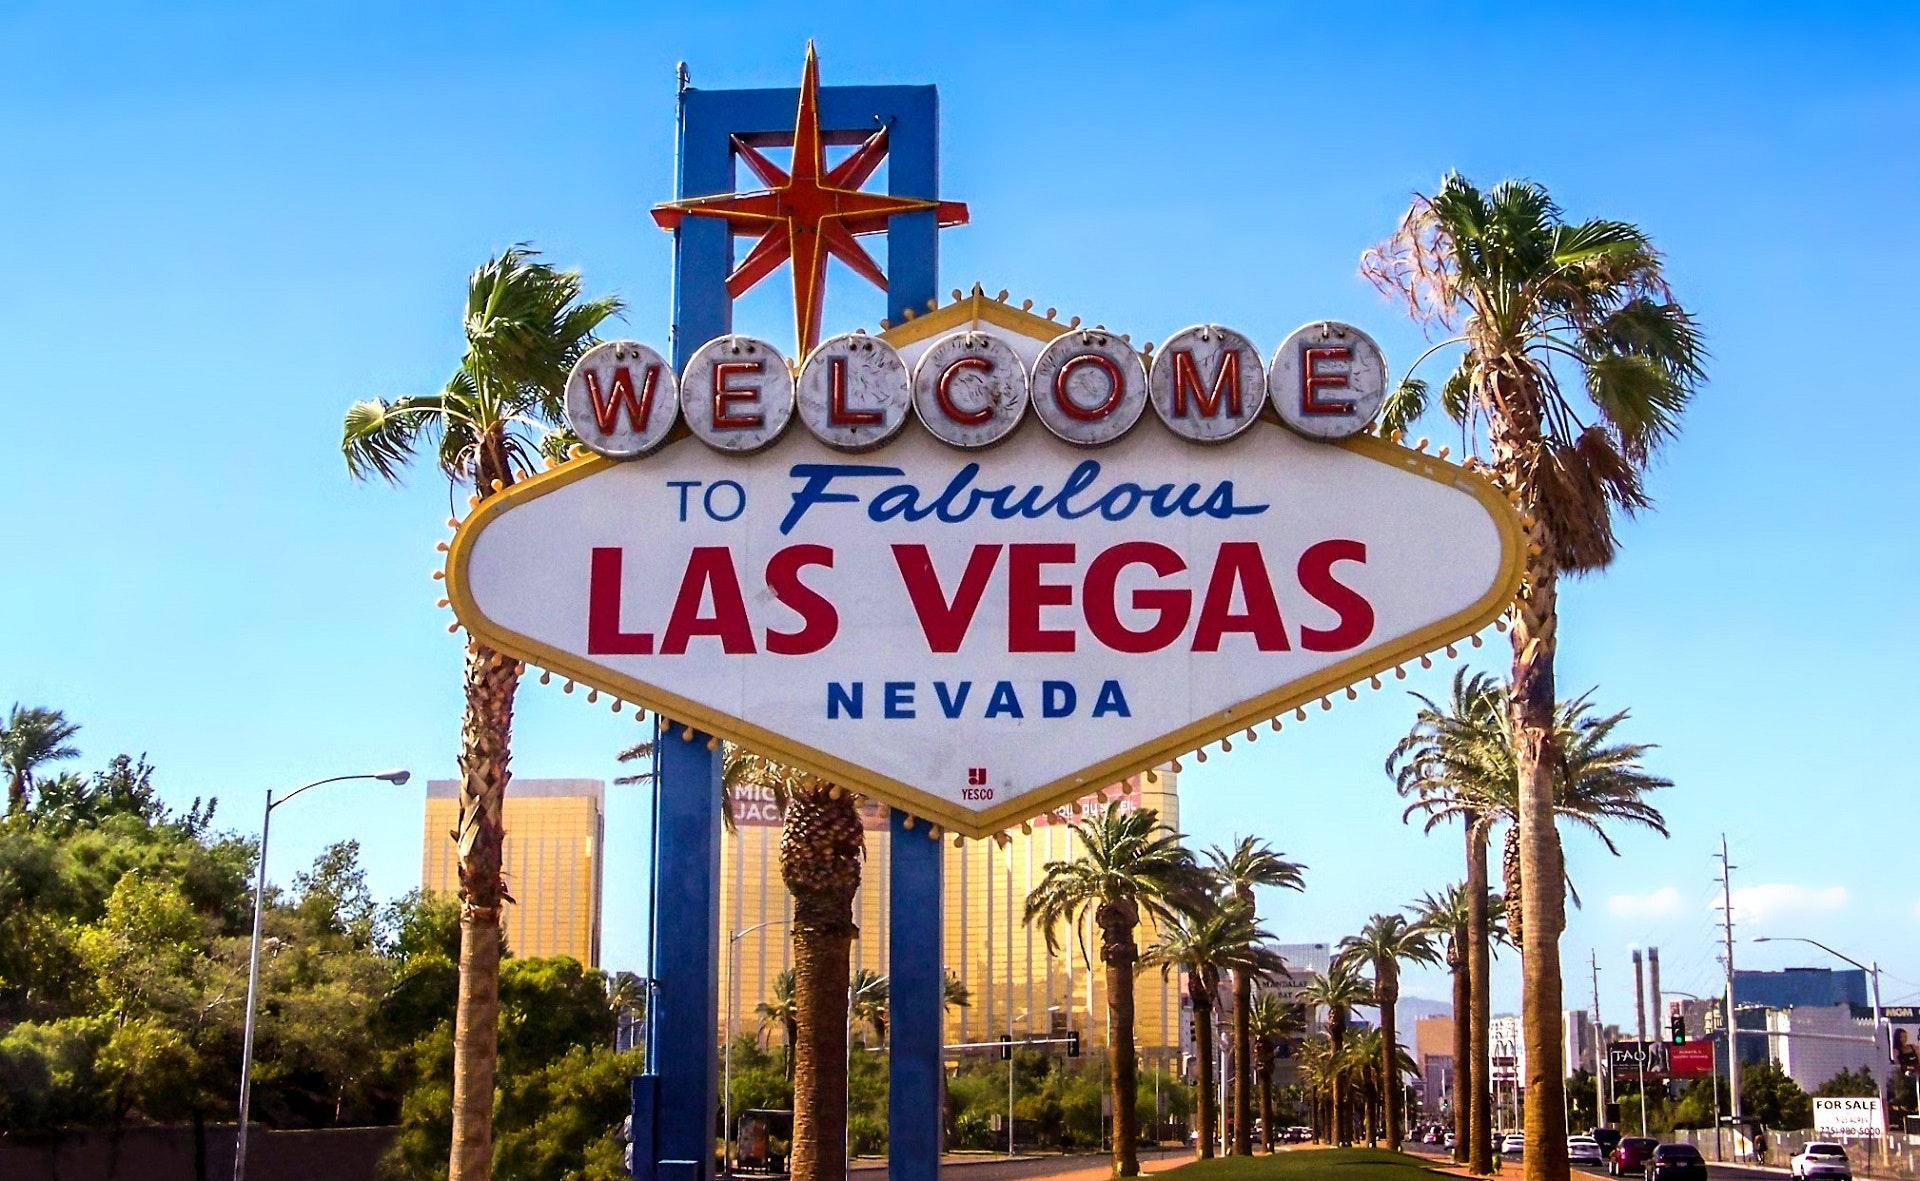 Las Vegas Hotels Investigated Over Legionnaires' Disease